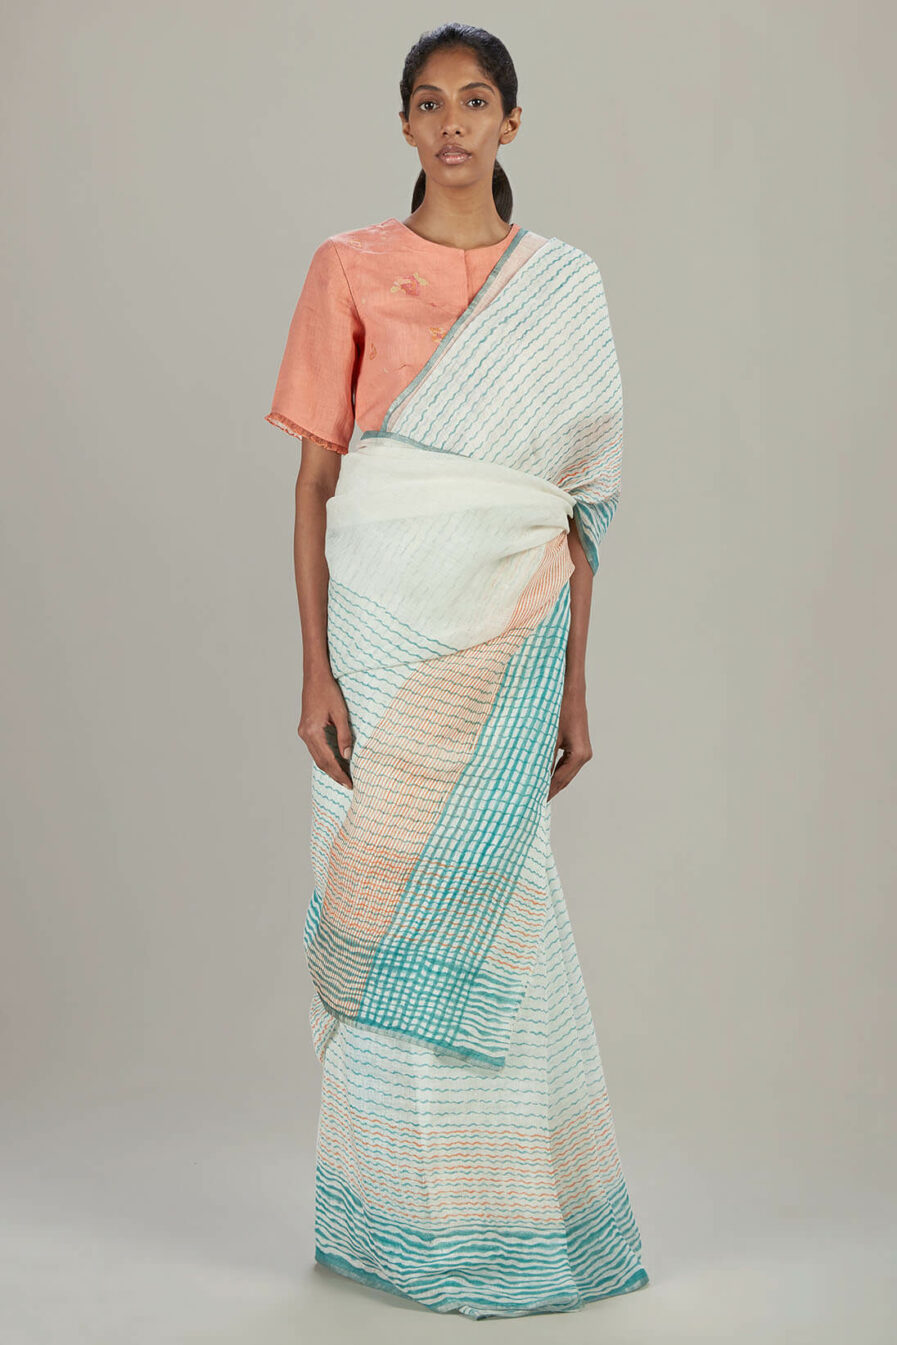 Anavil Wave block printed sari